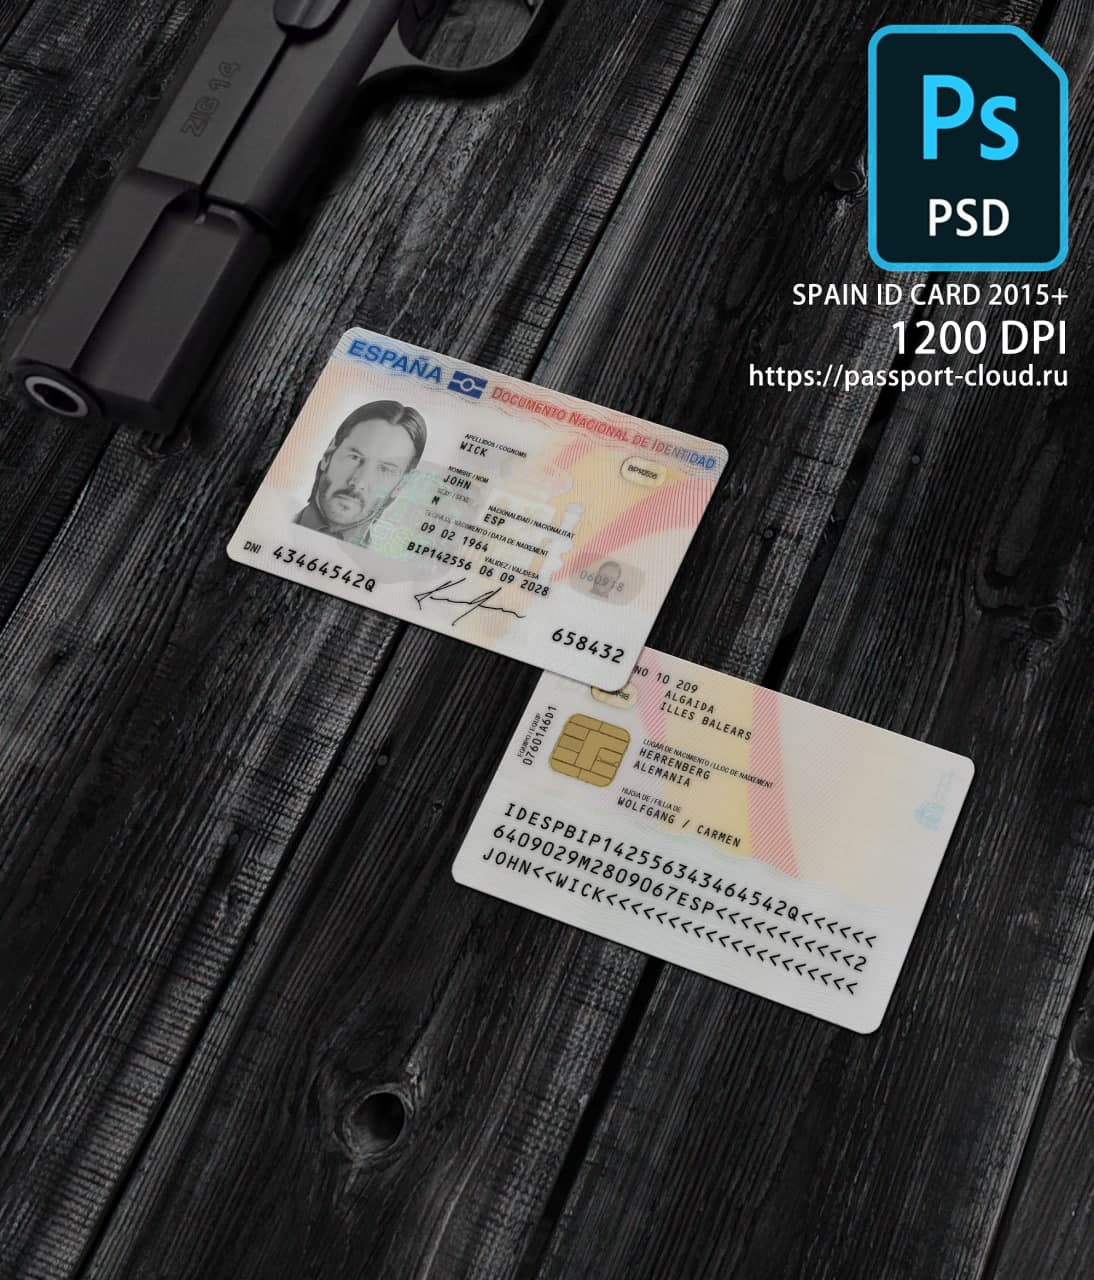 Spain ID Card 2015+ PSD1